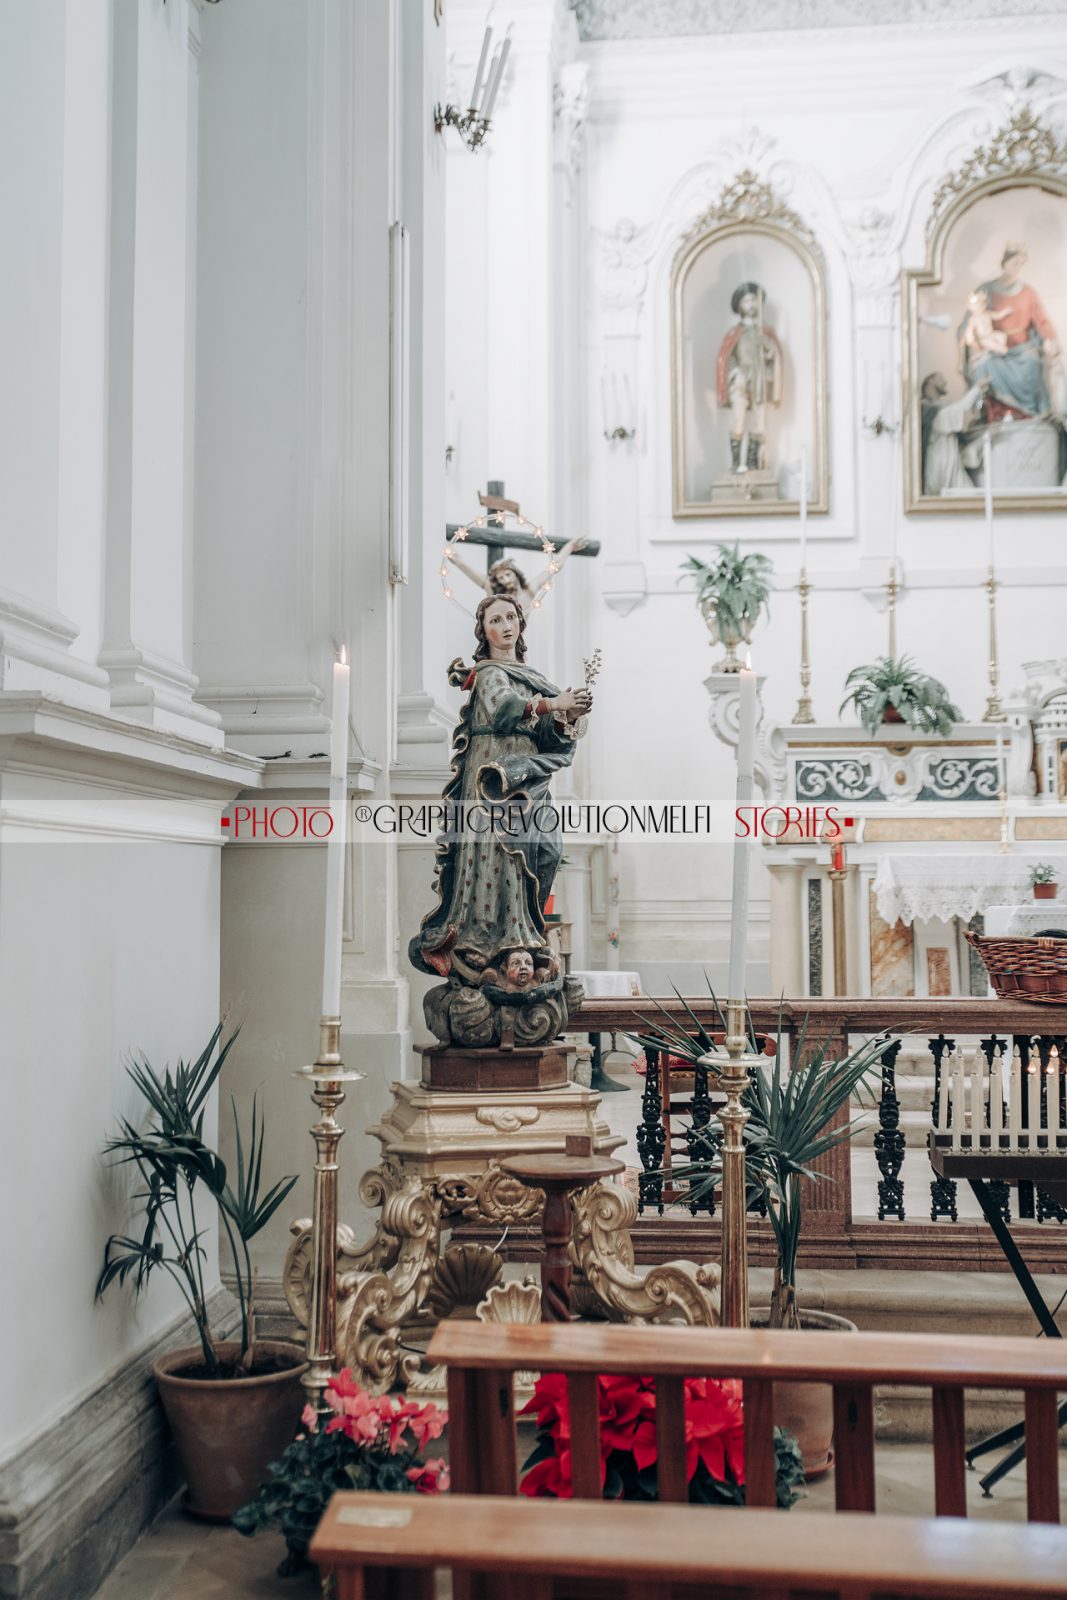 Melfi panedduzze immacolata 8 dicembre 2021 santa maria ad nives immacolata concezione basilicata